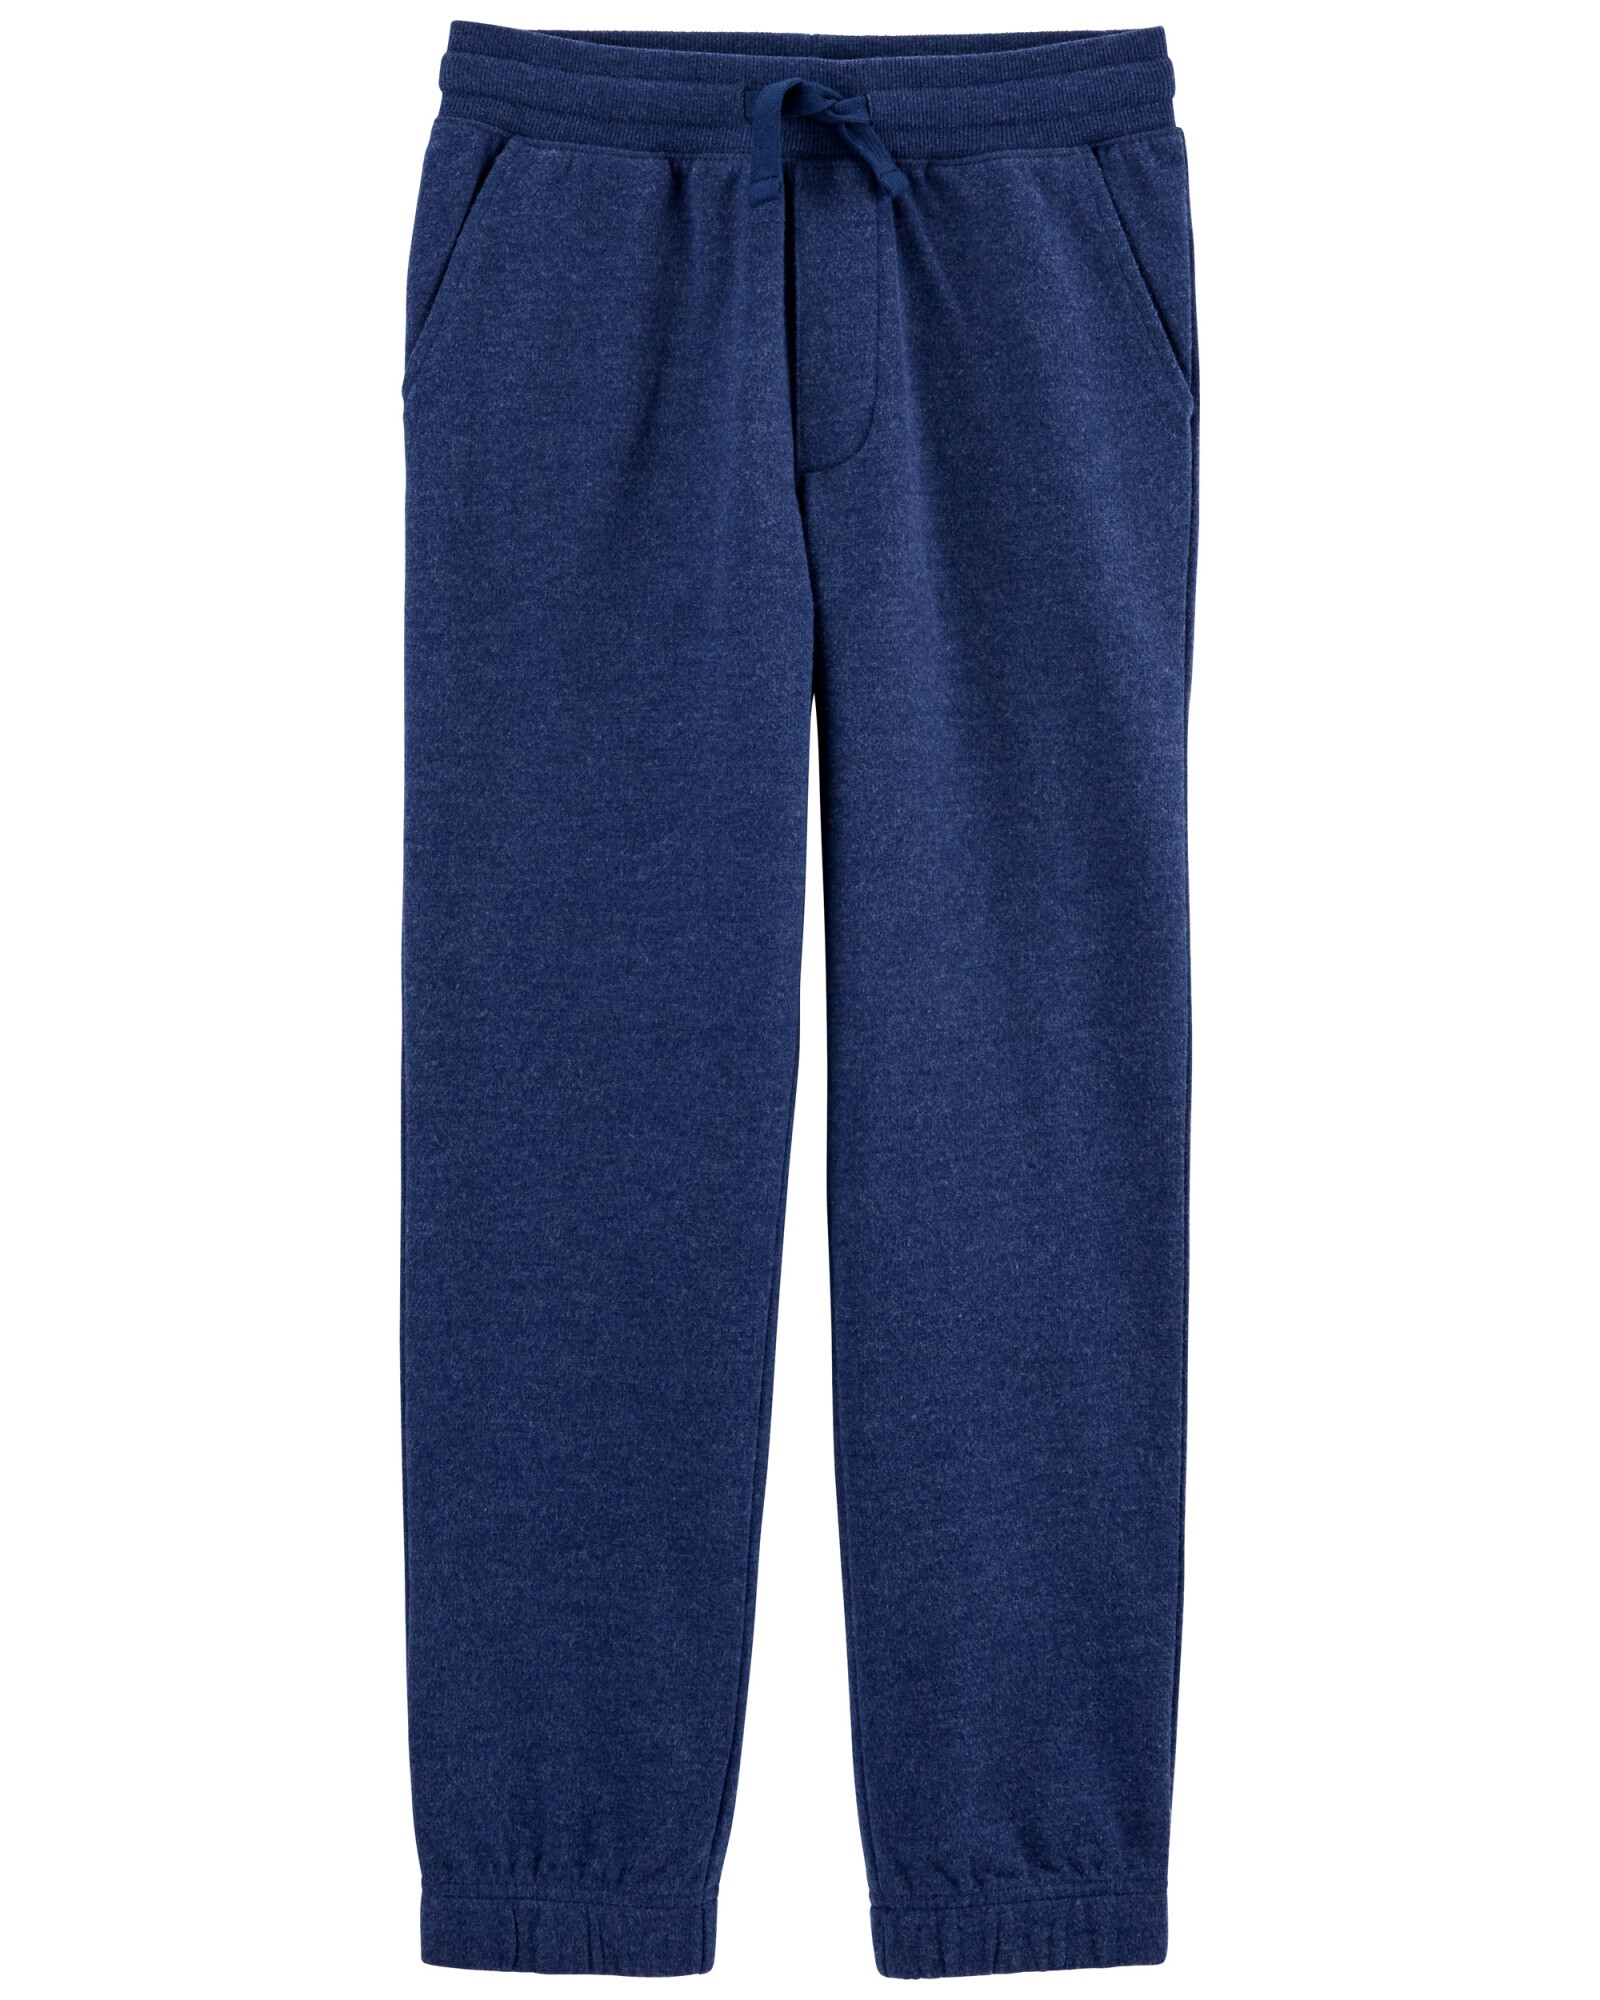 Pantalón de algodón, con logo, azul. Talles 6-14 Sin color